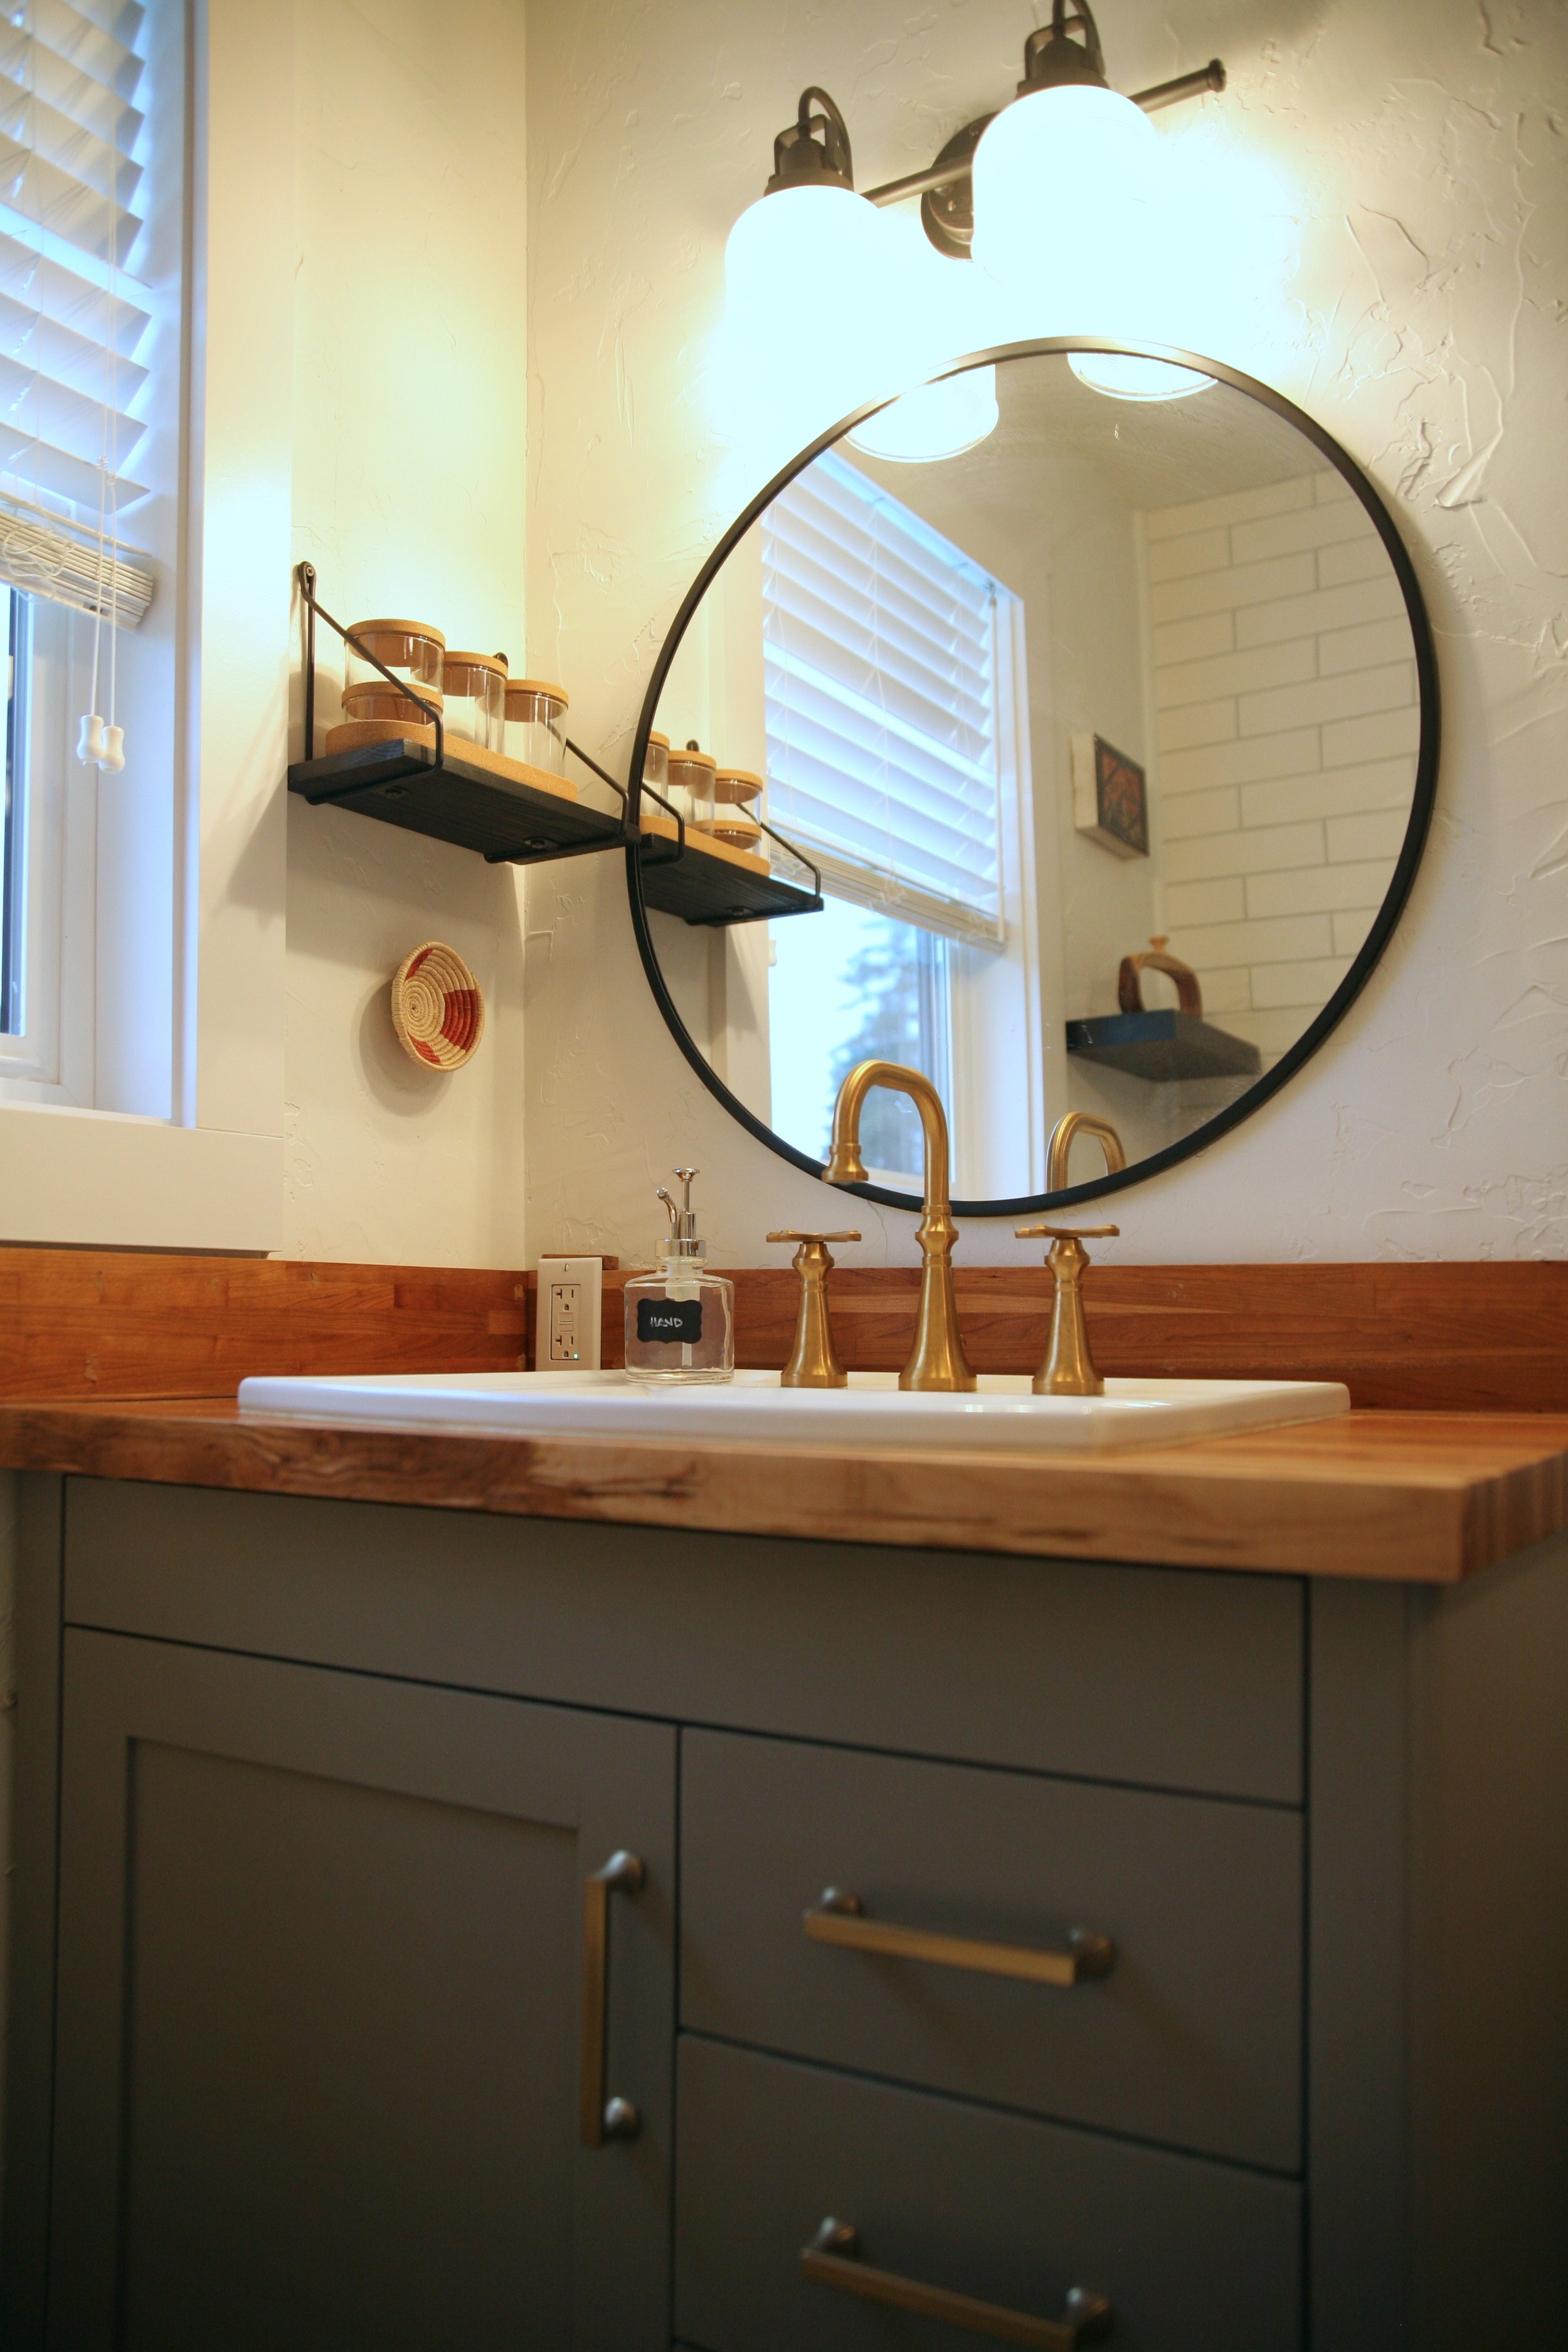 Tahoma Loft - bathroom vanity.JPG